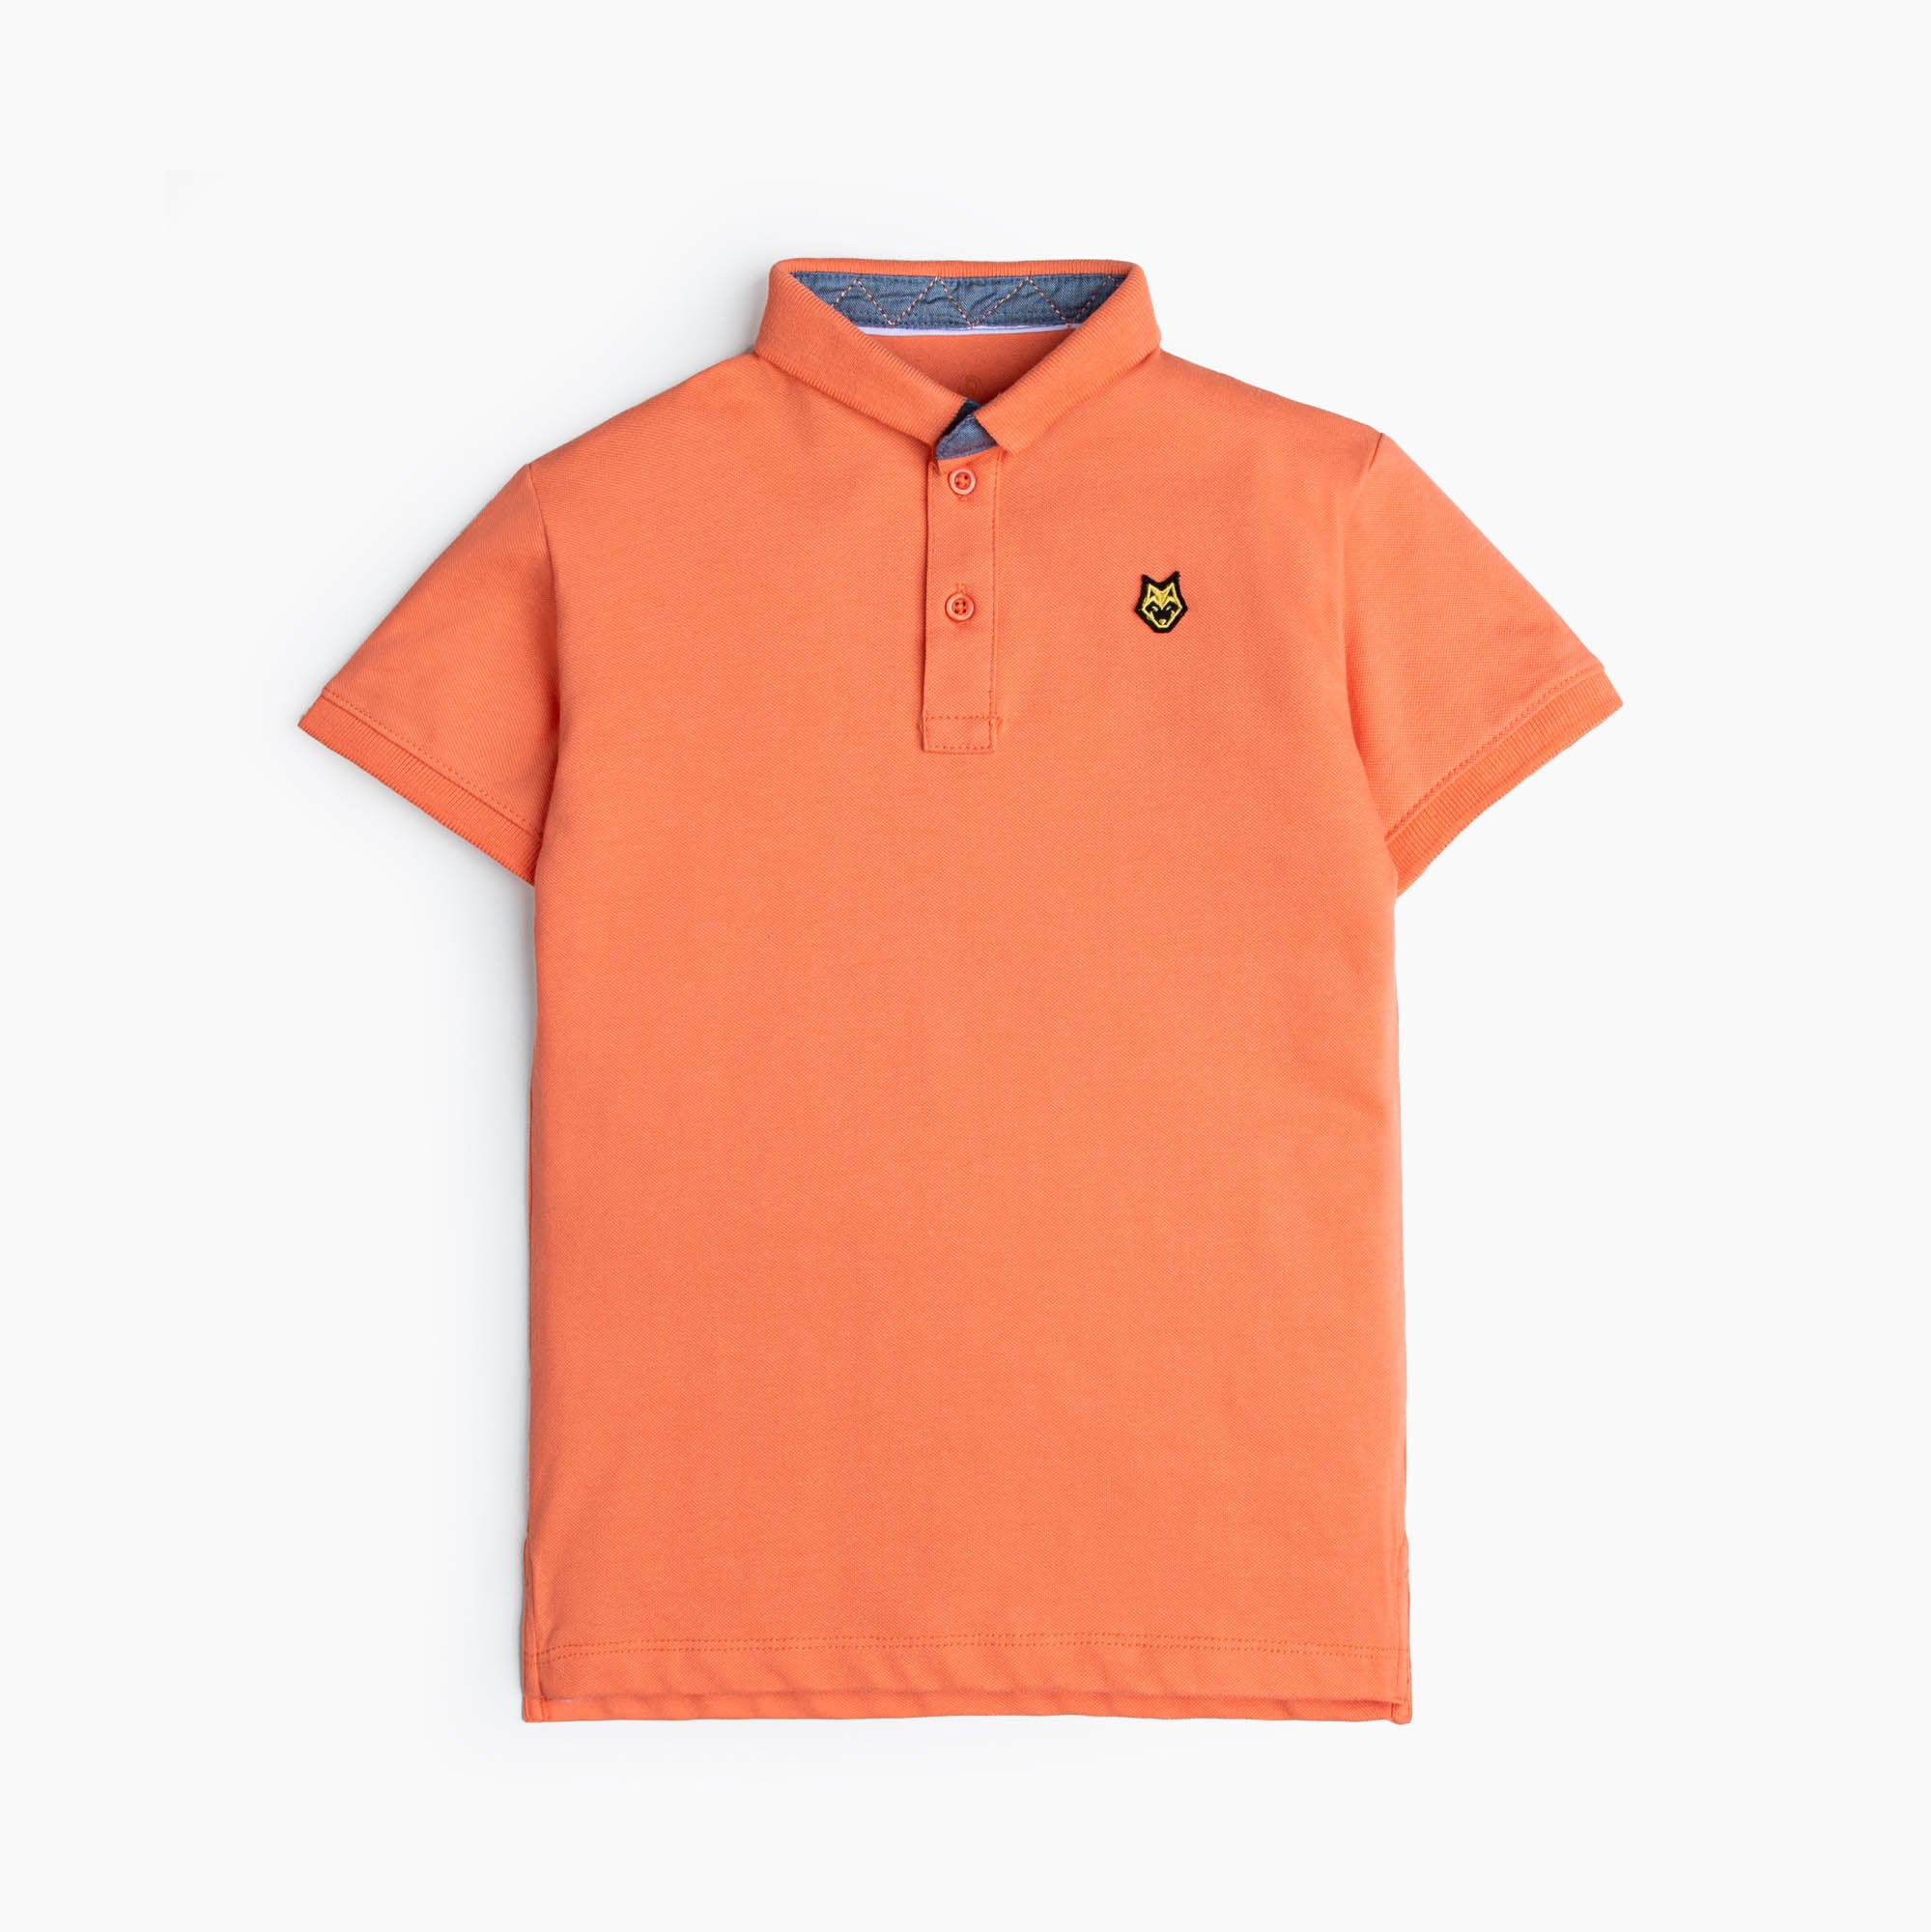 Basic Orange Polo